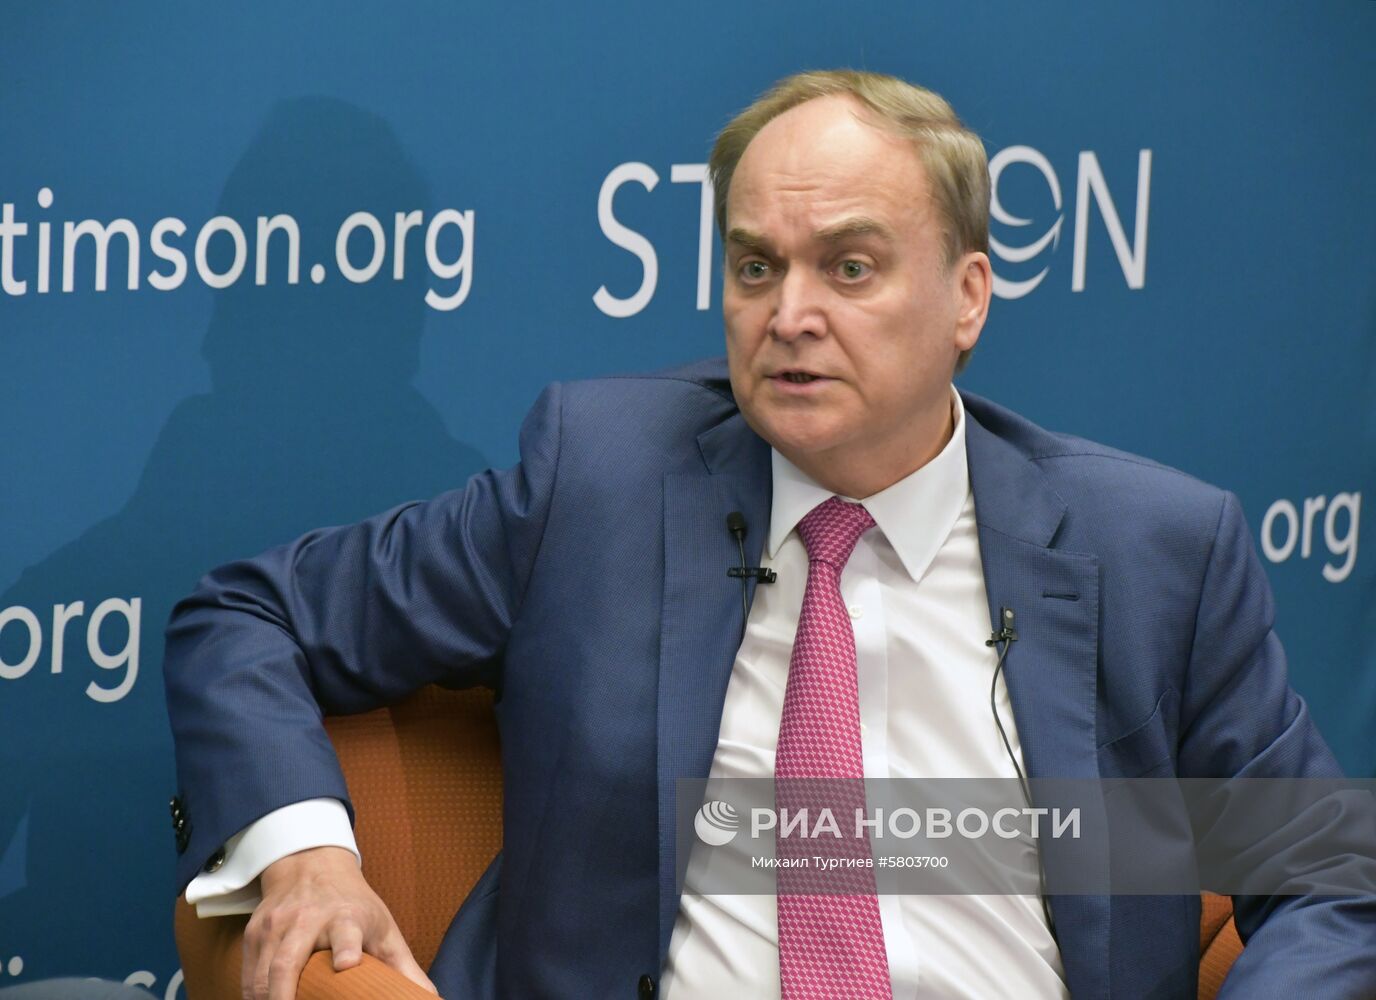 Посол РФ в США А. Антонов